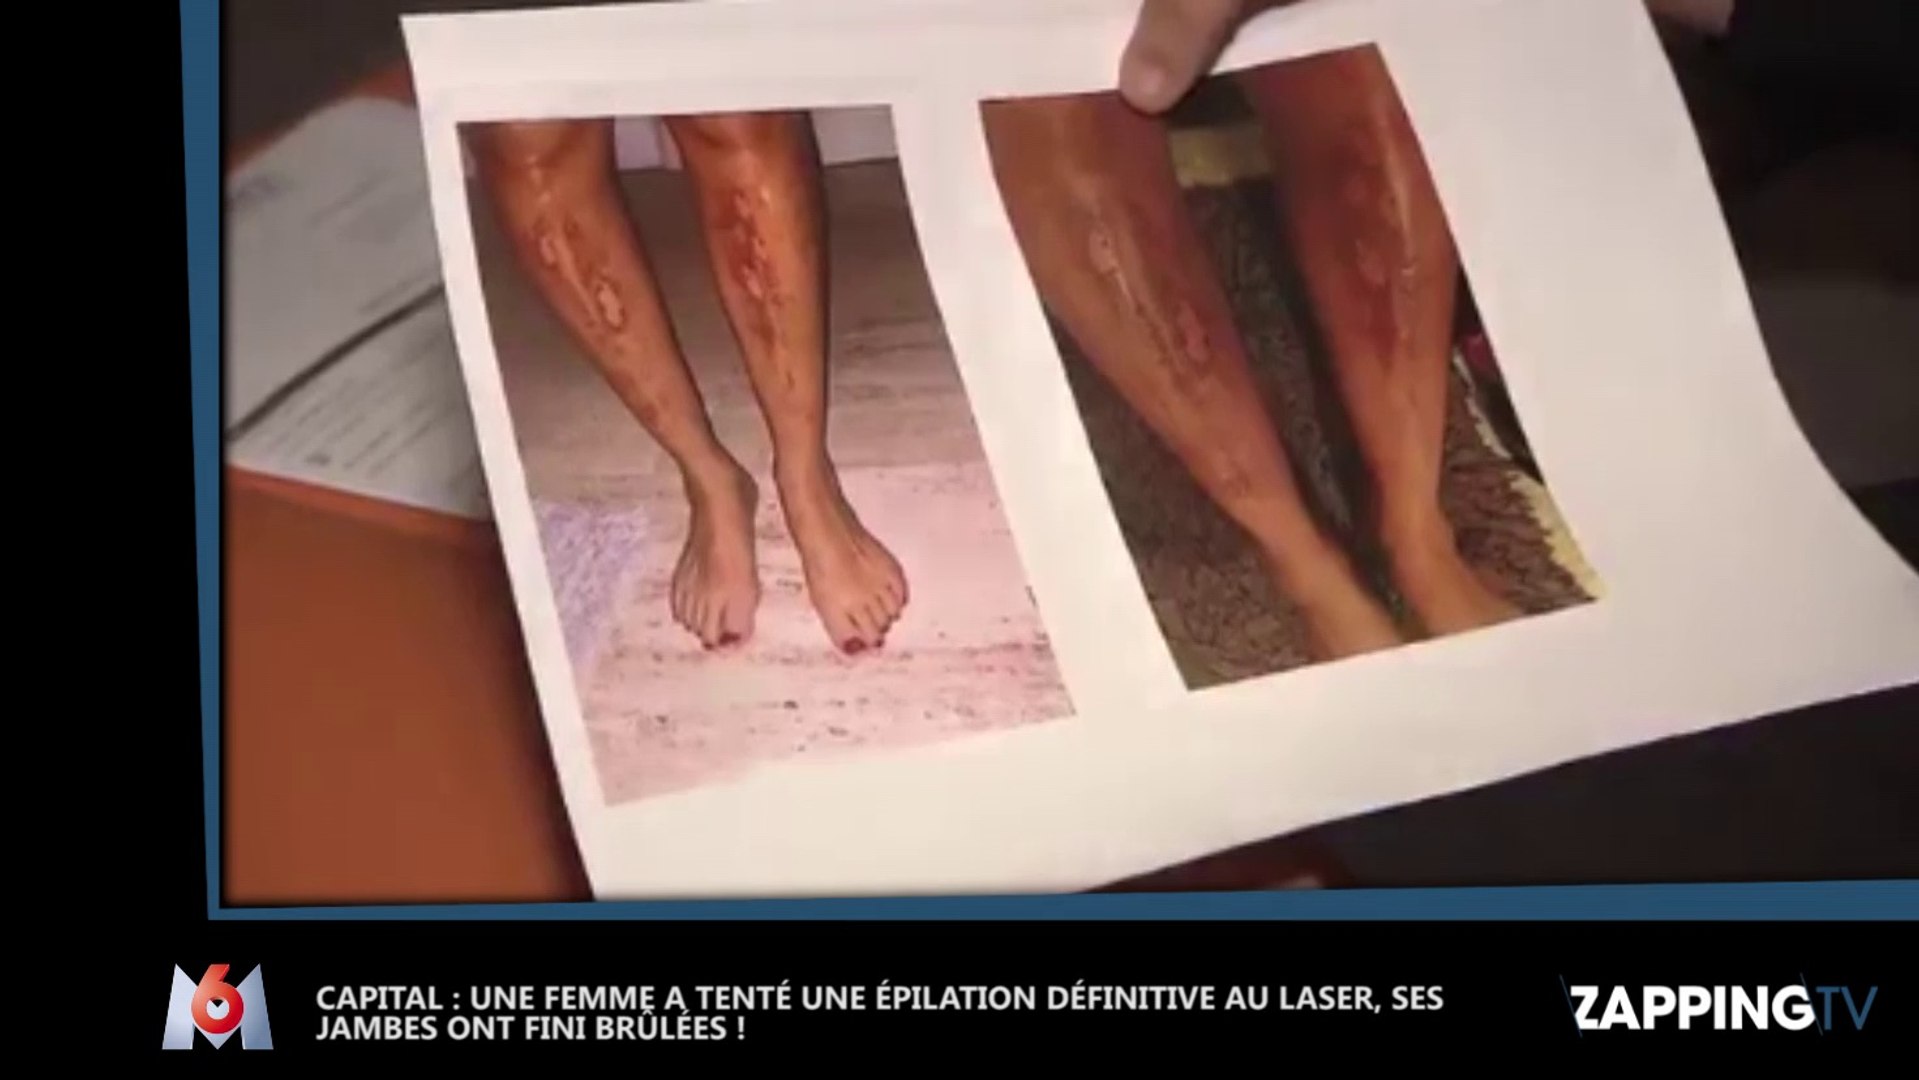 Capital : Une jeune femme a les jambes brûlées après une épilation au  laser, les images chocs ! (Vidéo) - Vidéo Dailymotion